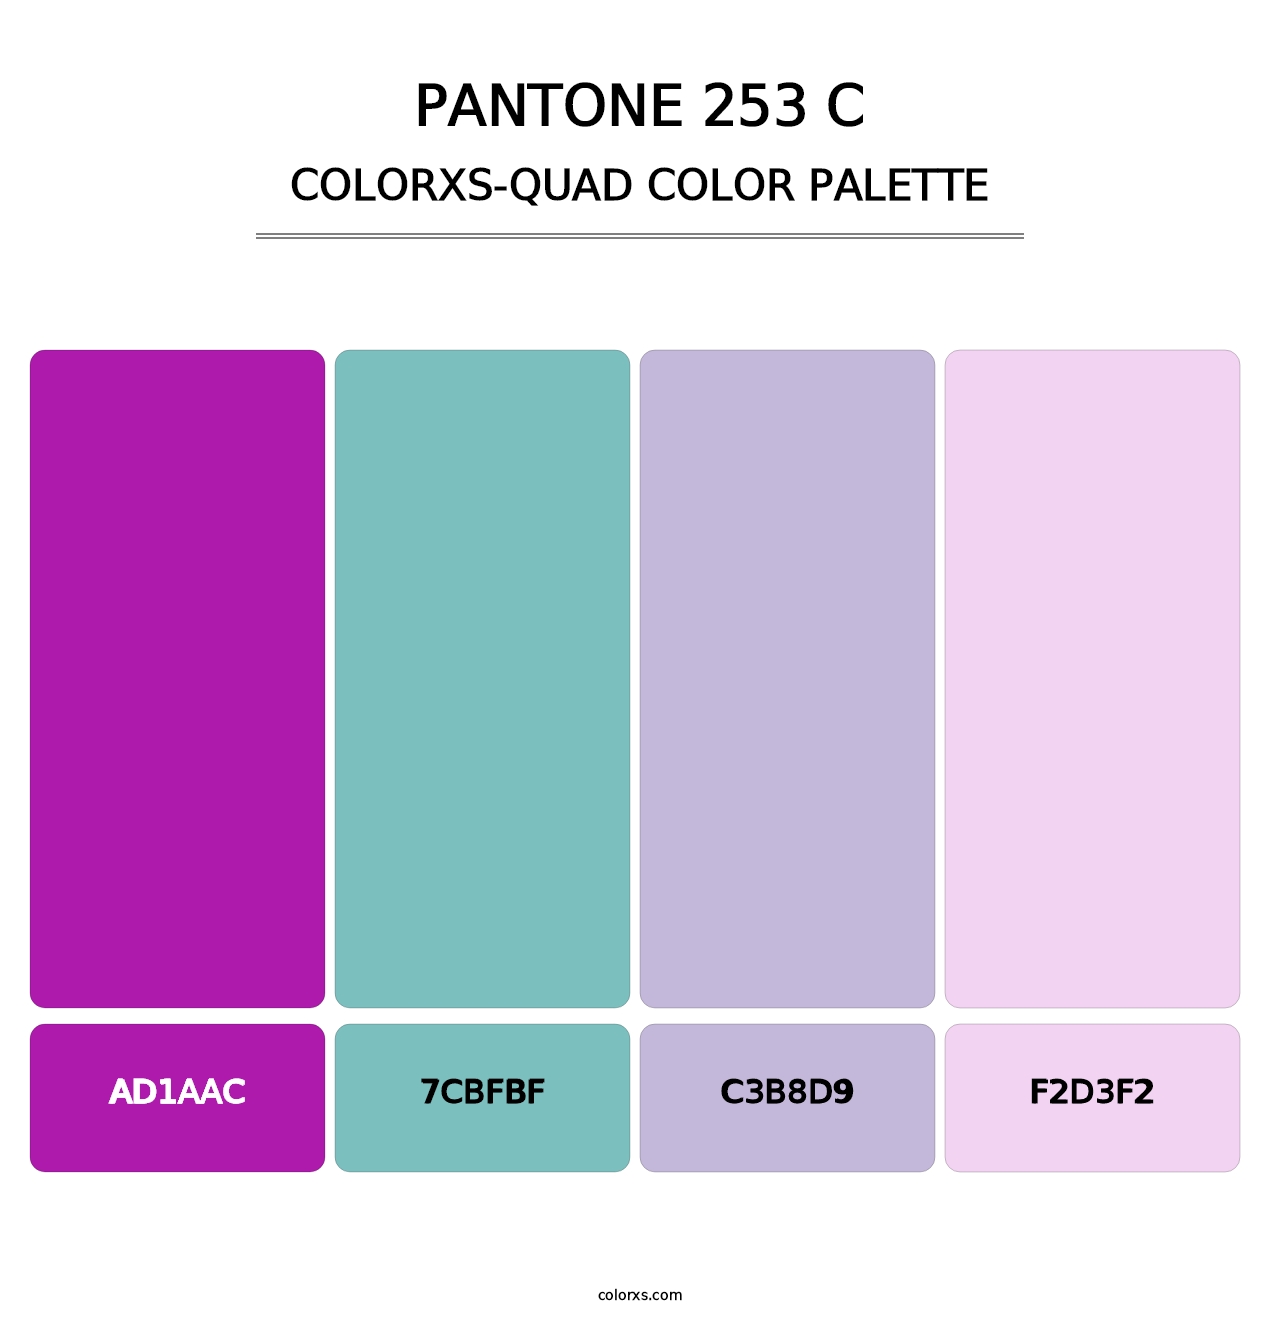 PANTONE 253 C - Colorxs Quad Palette